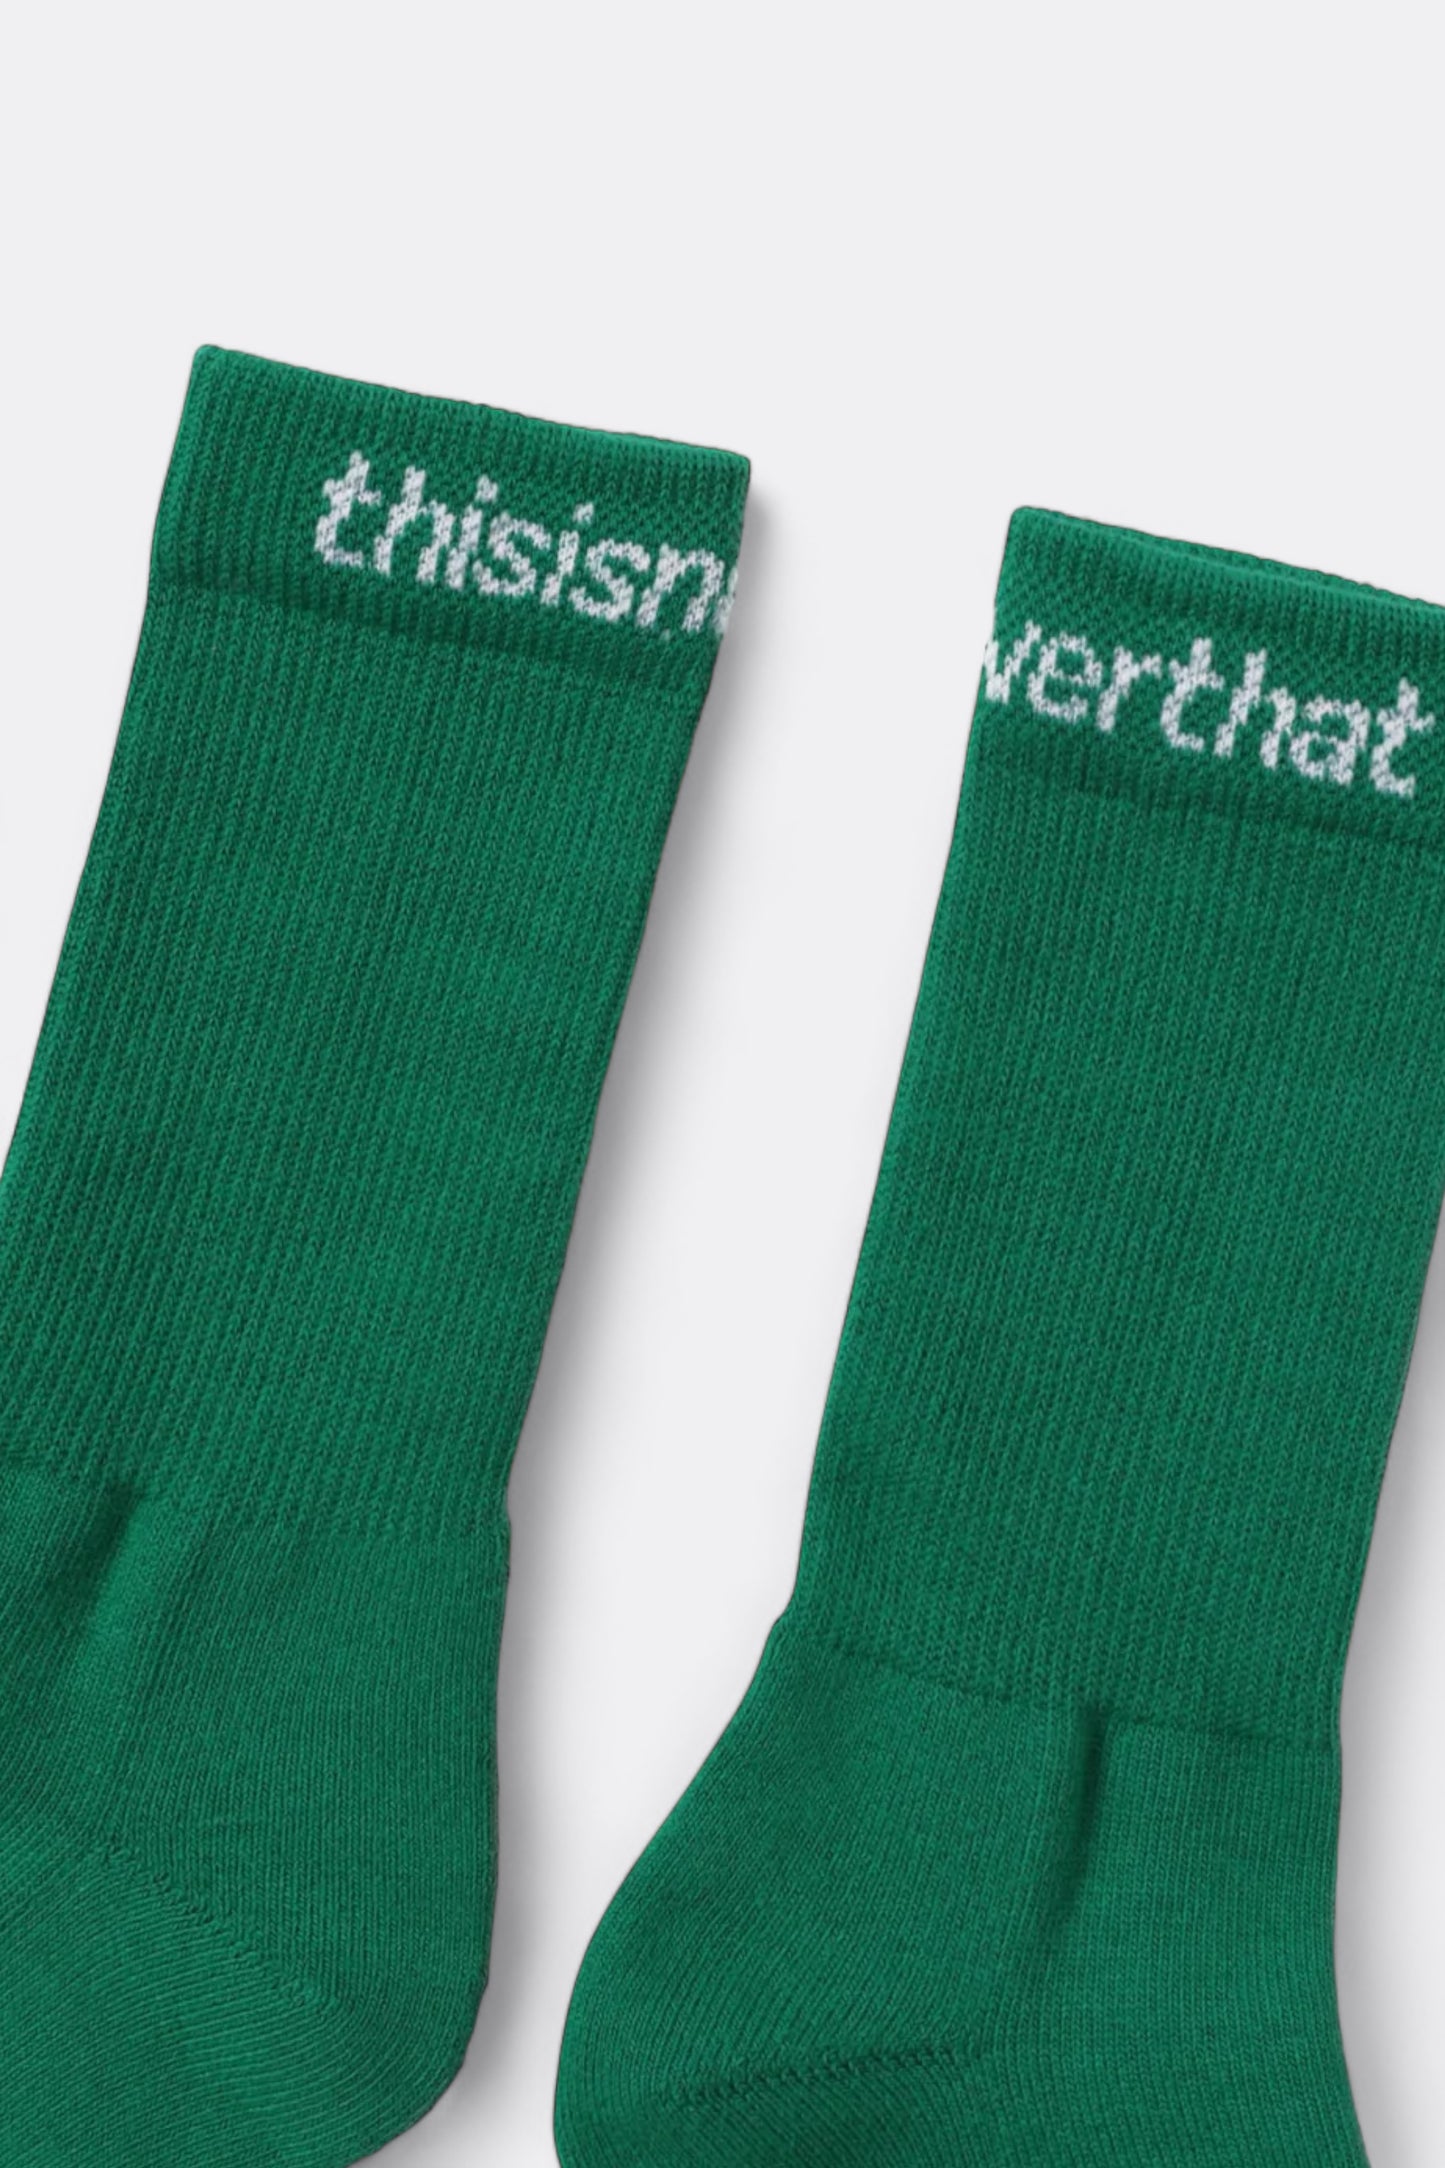 thisisneverthat - SP-Logo Socks 3Pack (Green)